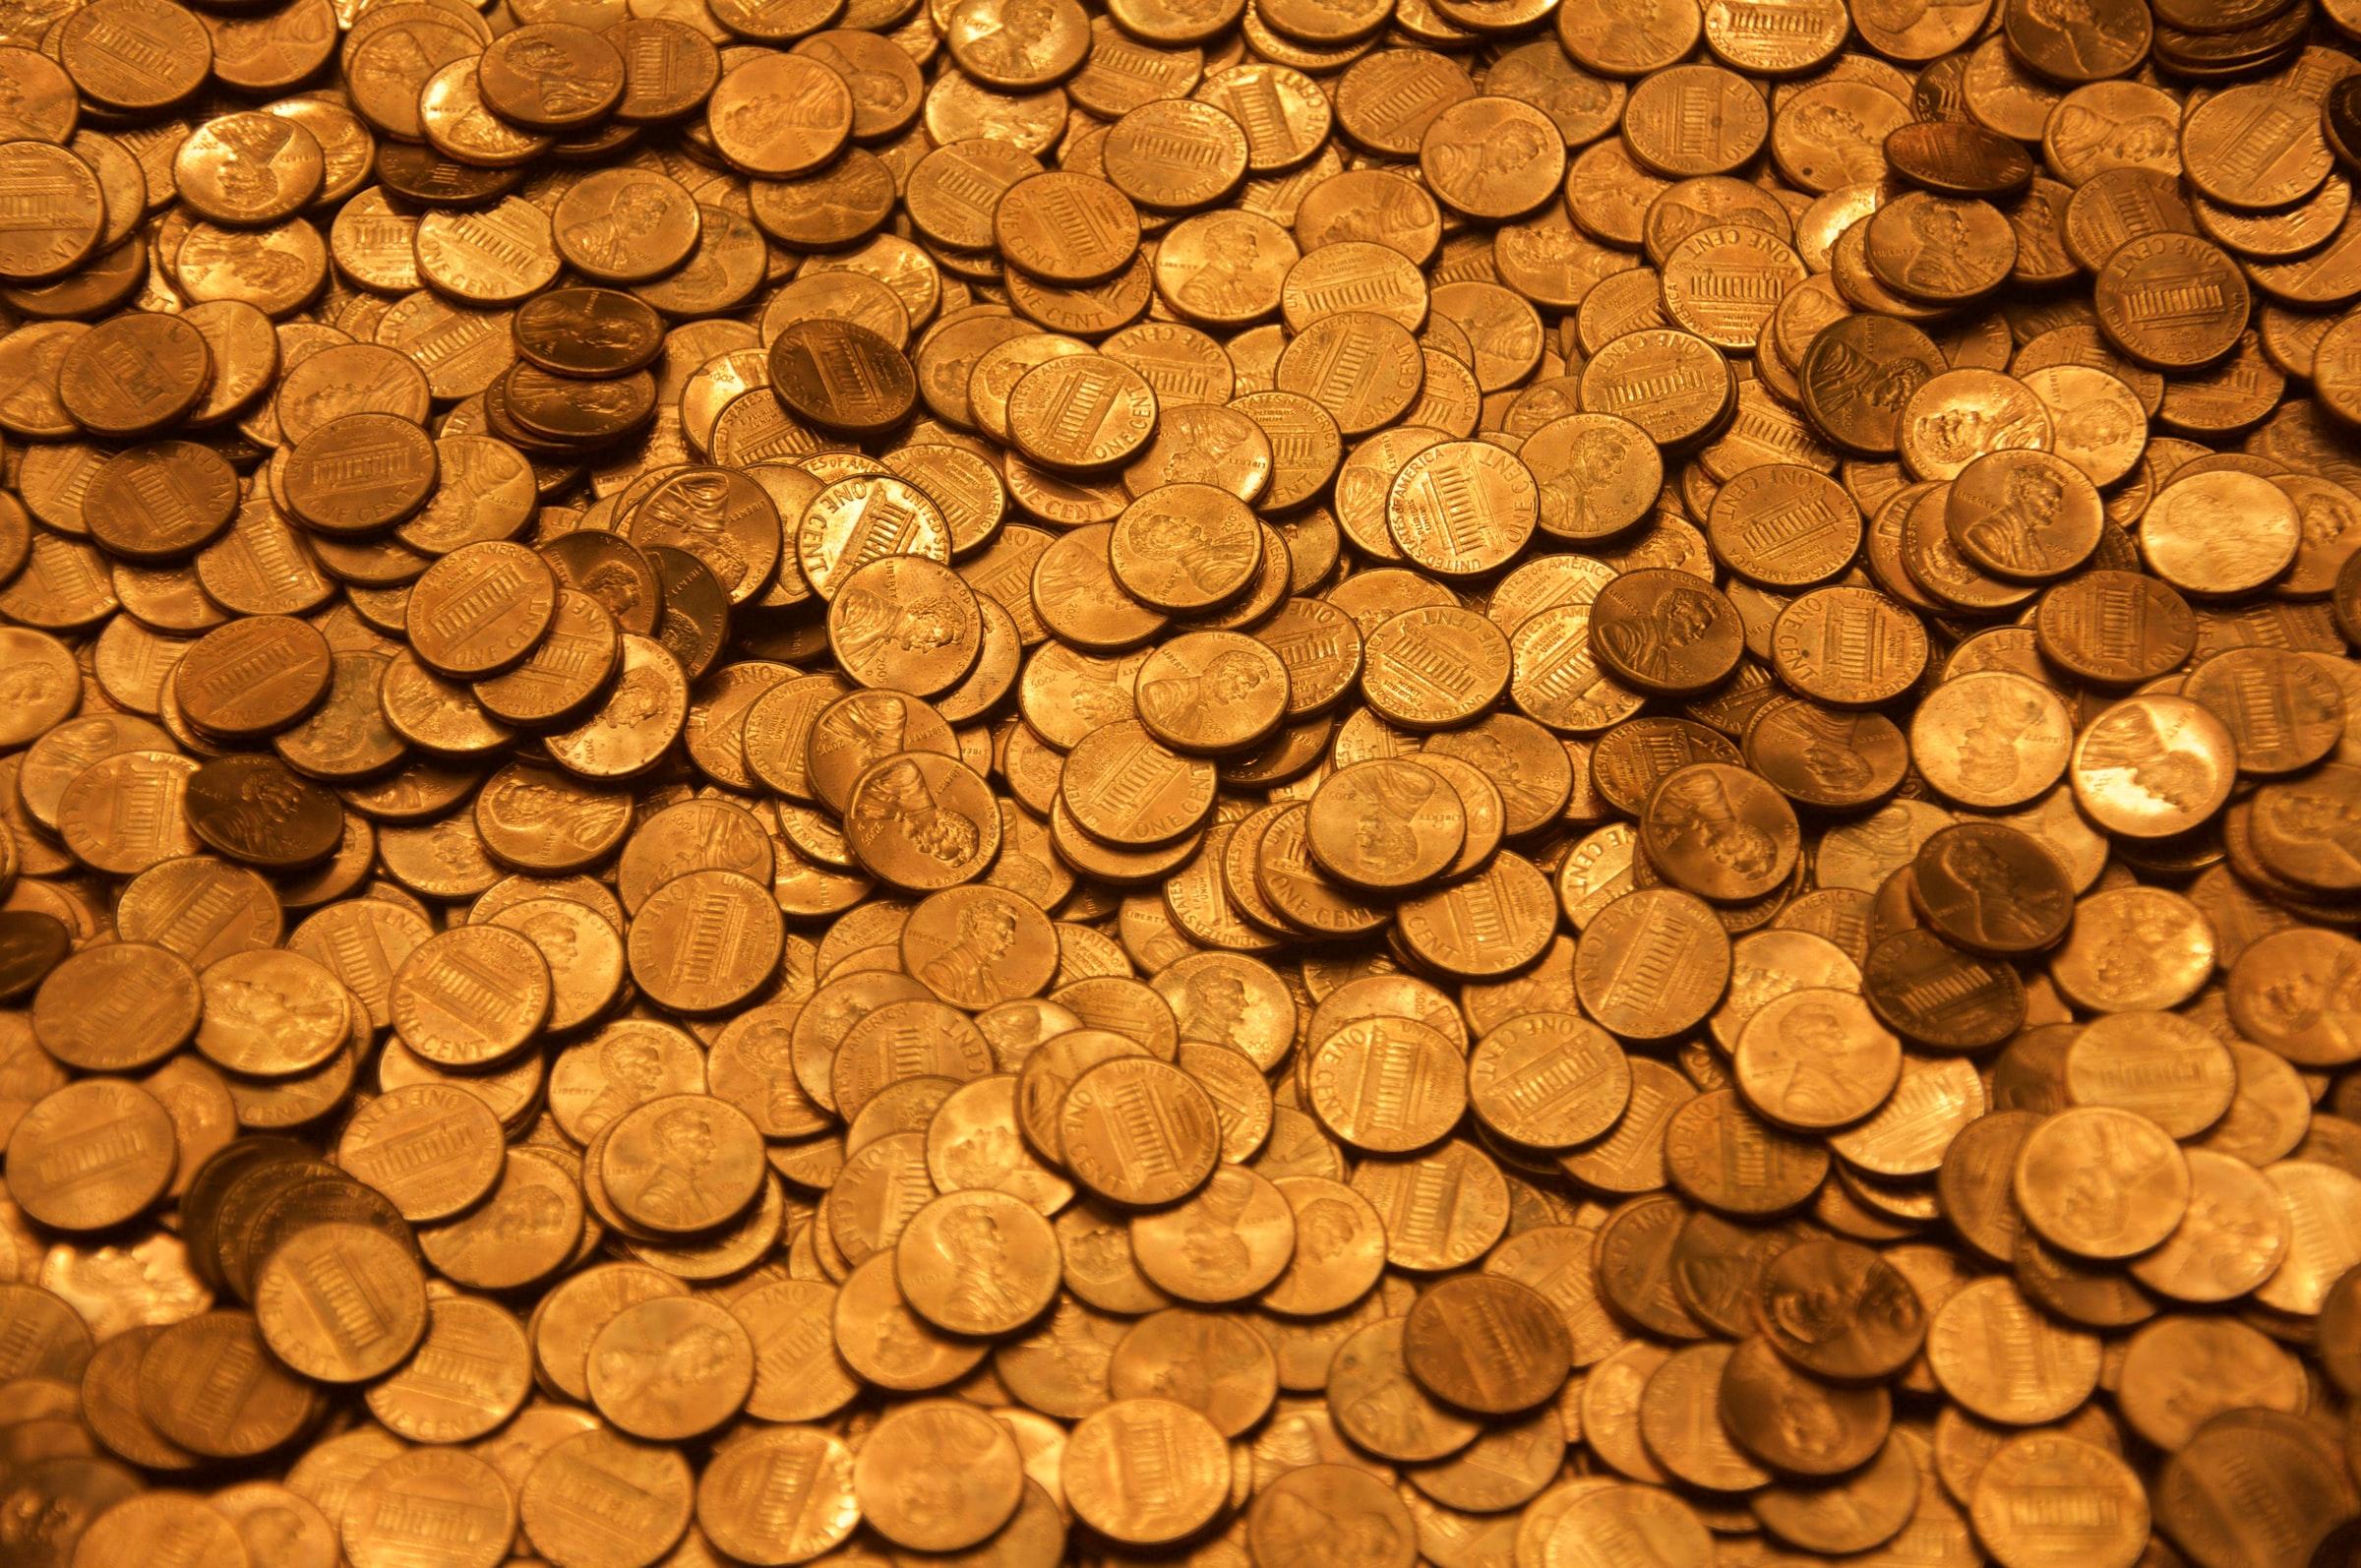 The Copper Stroll Treasure still hasn’t been found